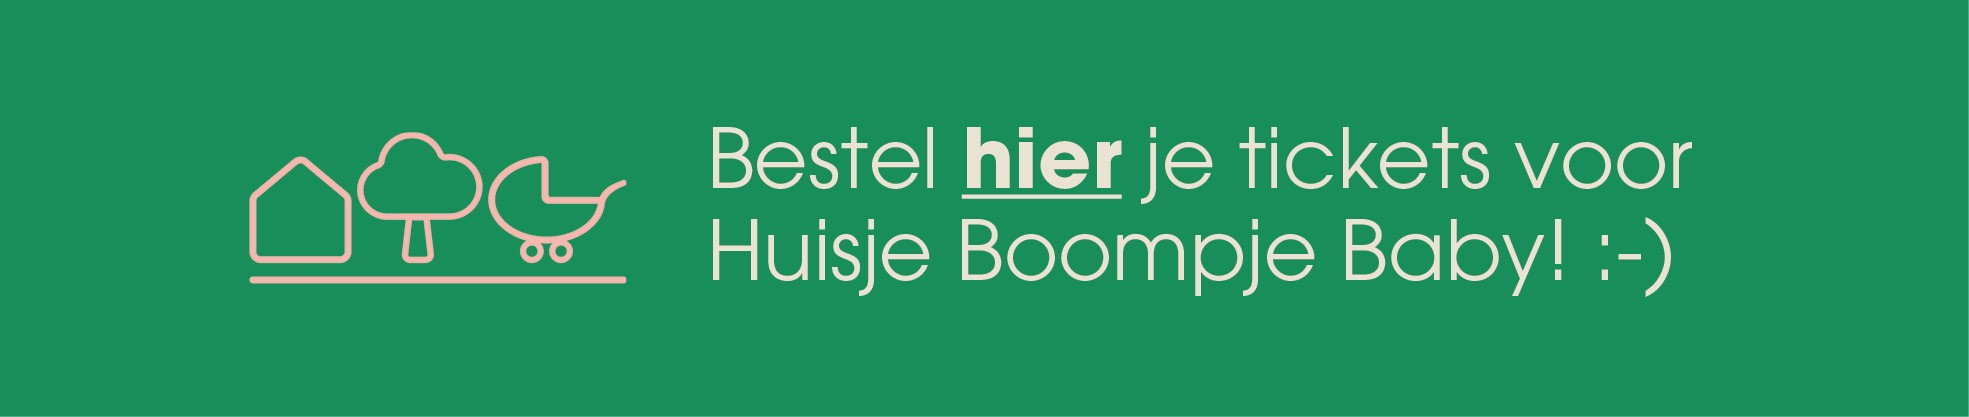 Bestel hier je tickets voor het Huisje Boompje Baby event in het Martiniplaza te Groningen.